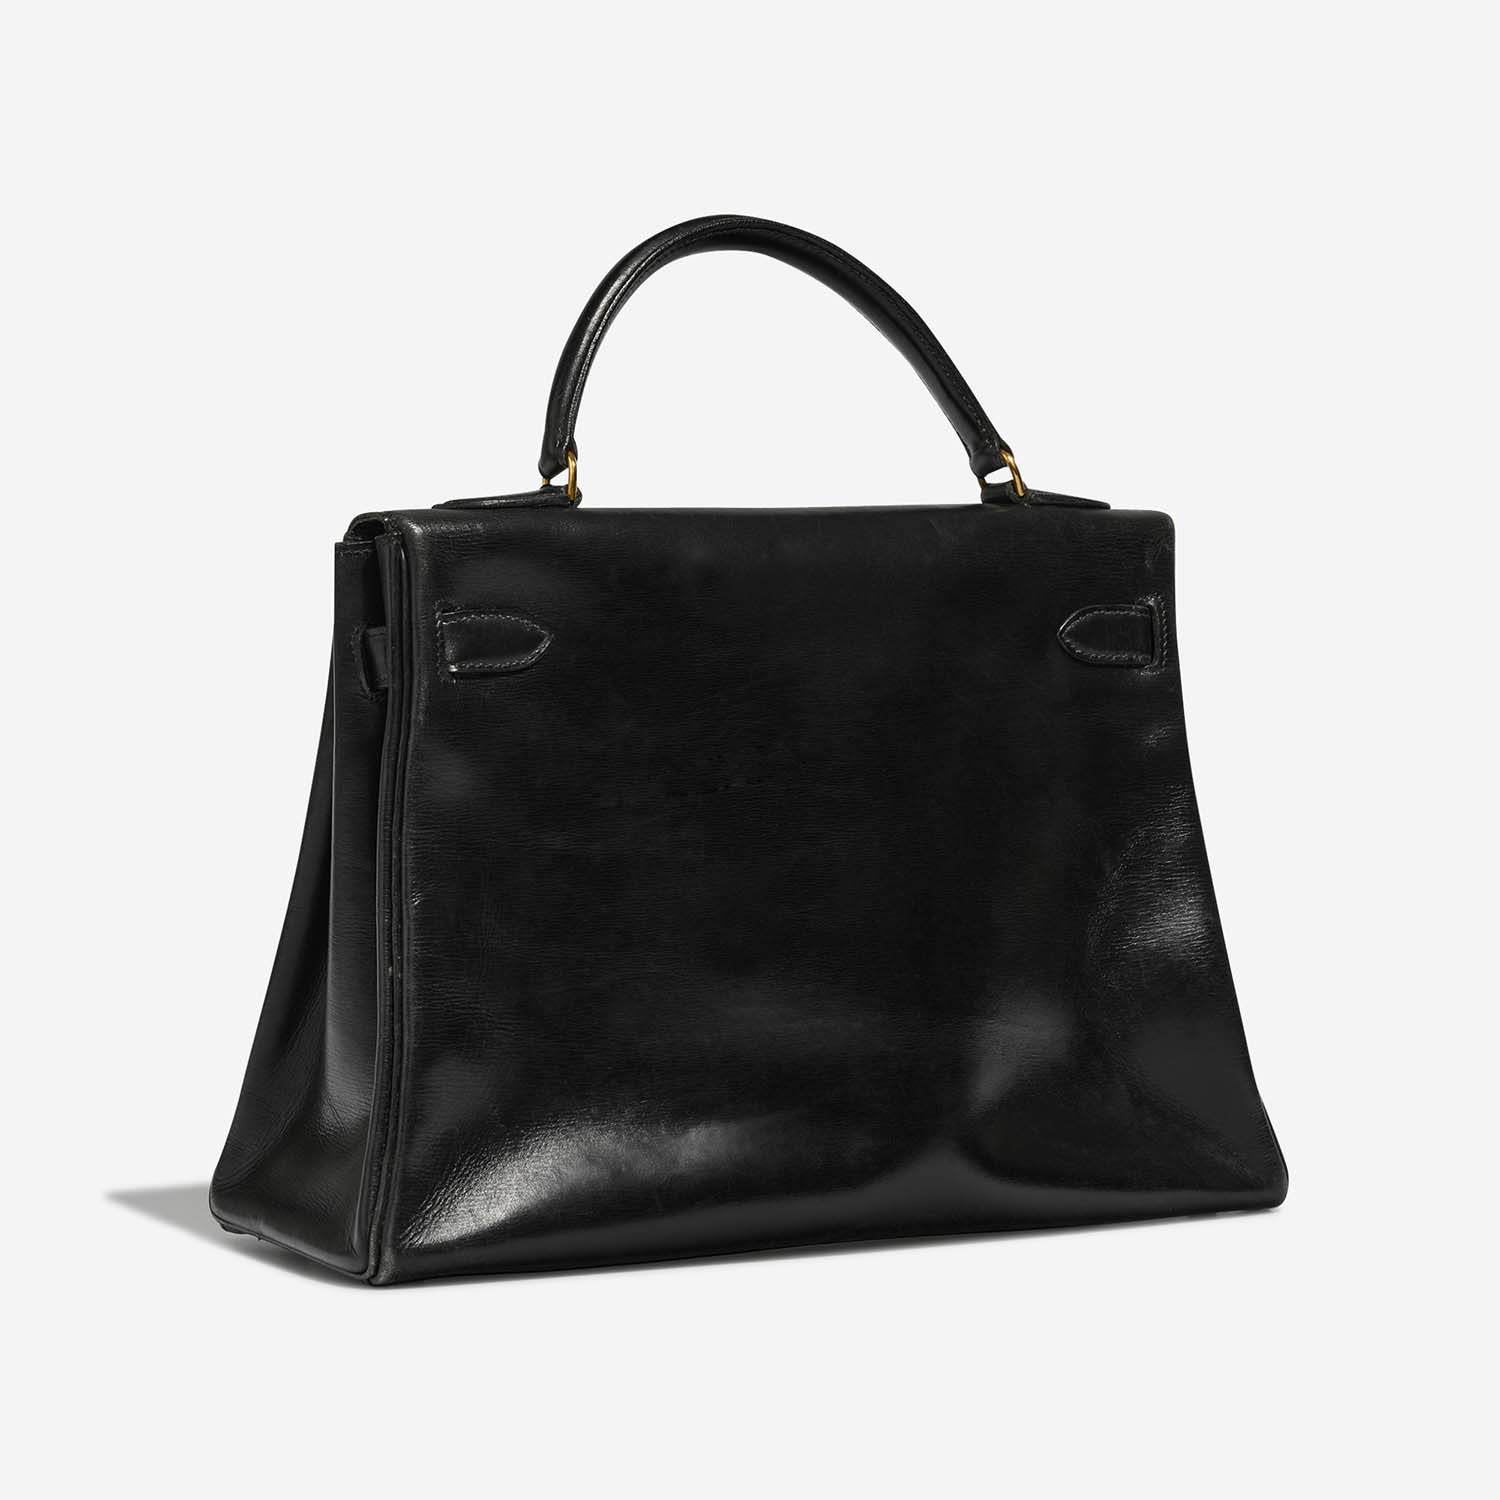 Hermès Kelly 32 Black Side Back | Verkaufen Sie Ihre Designer-Tasche auf Saclab.com